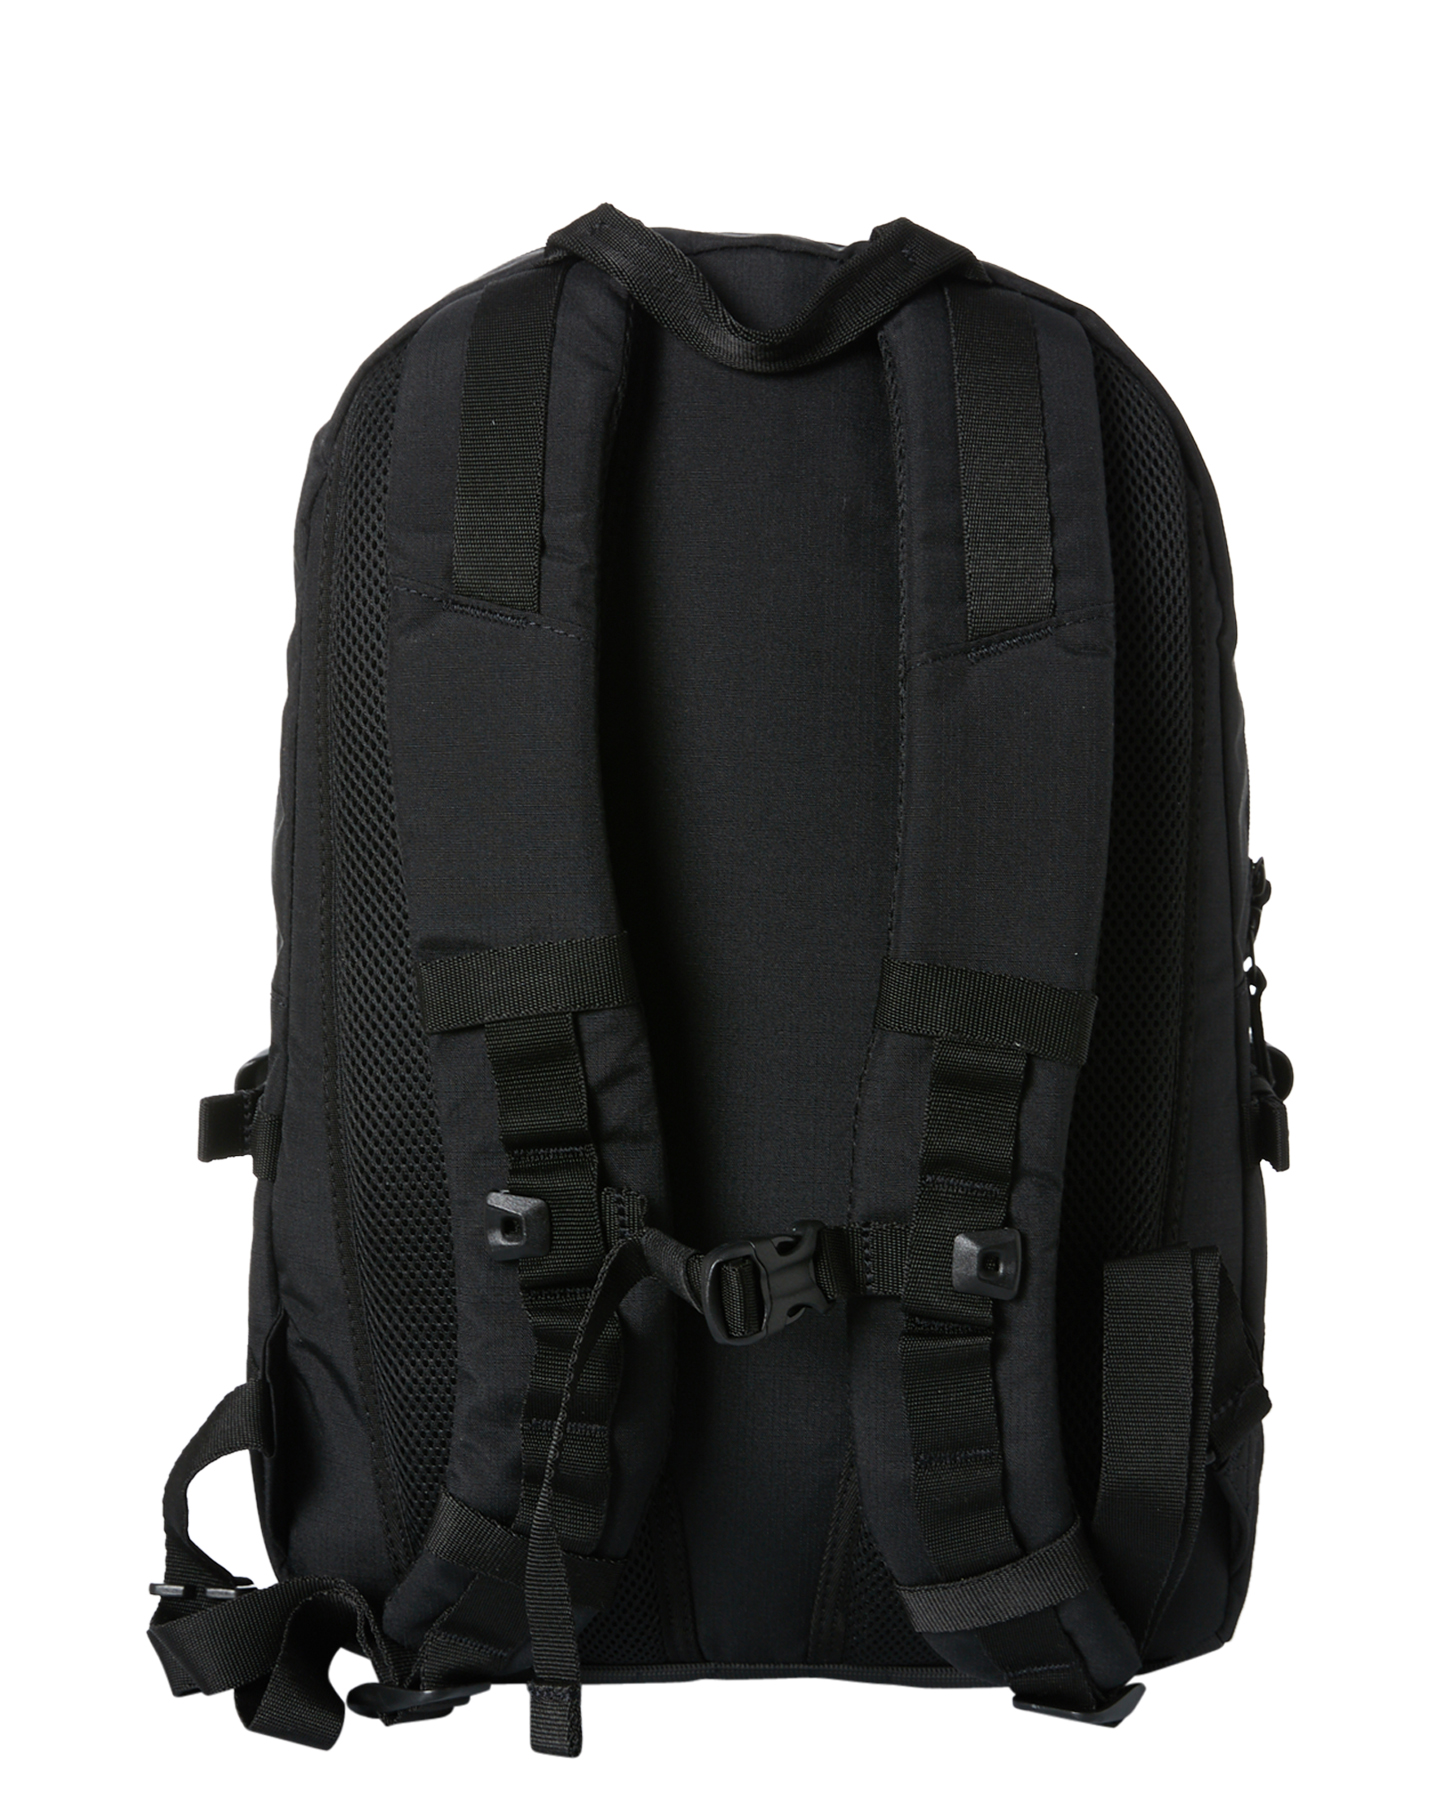 Oakley Street Backpack 2.0 Backpack - Blackout | SurfStitch